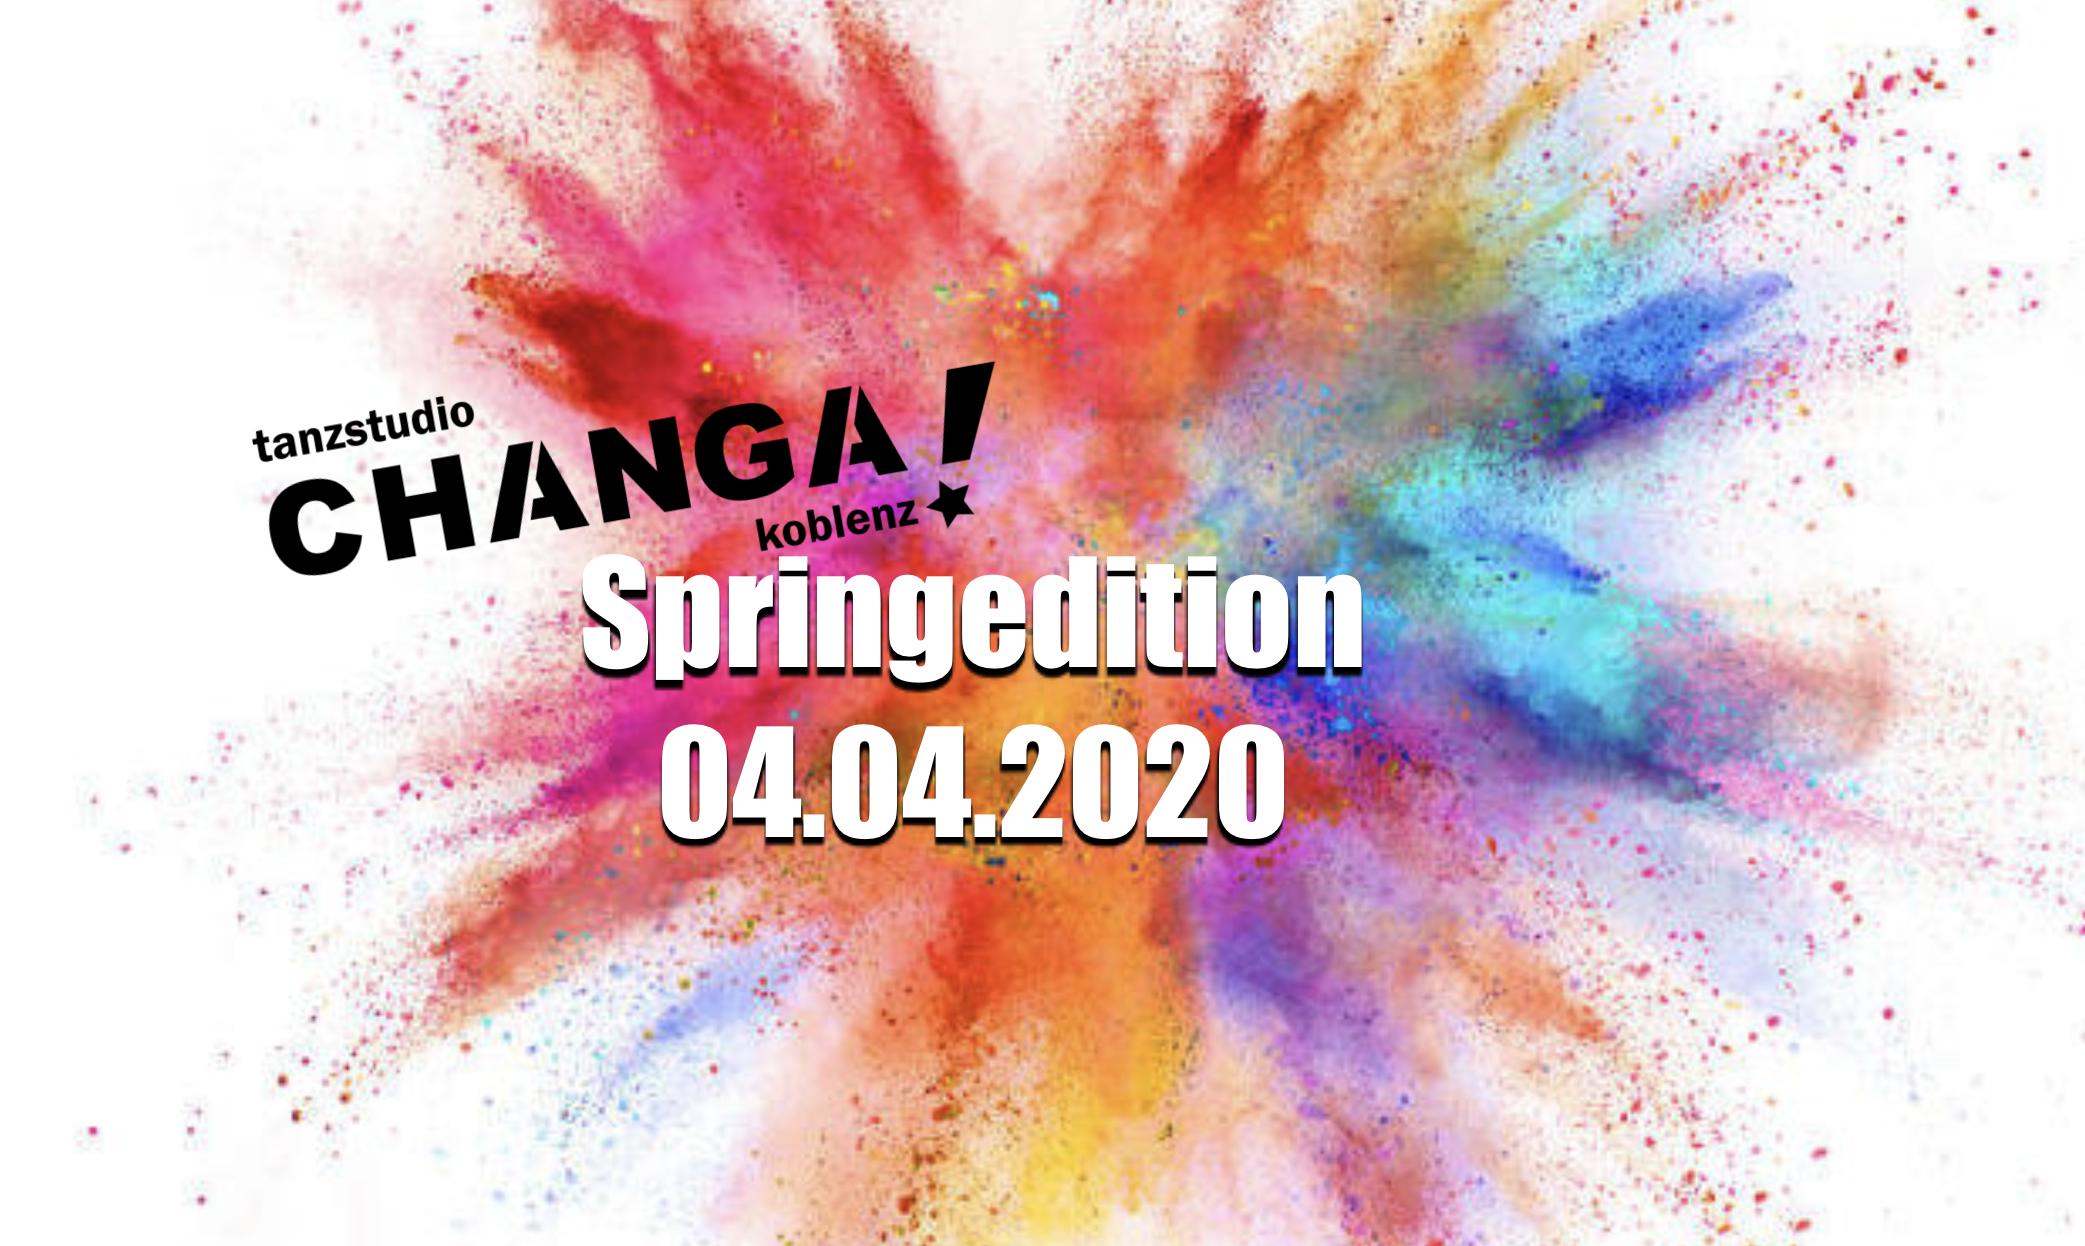 CHANGA!´s Springedition